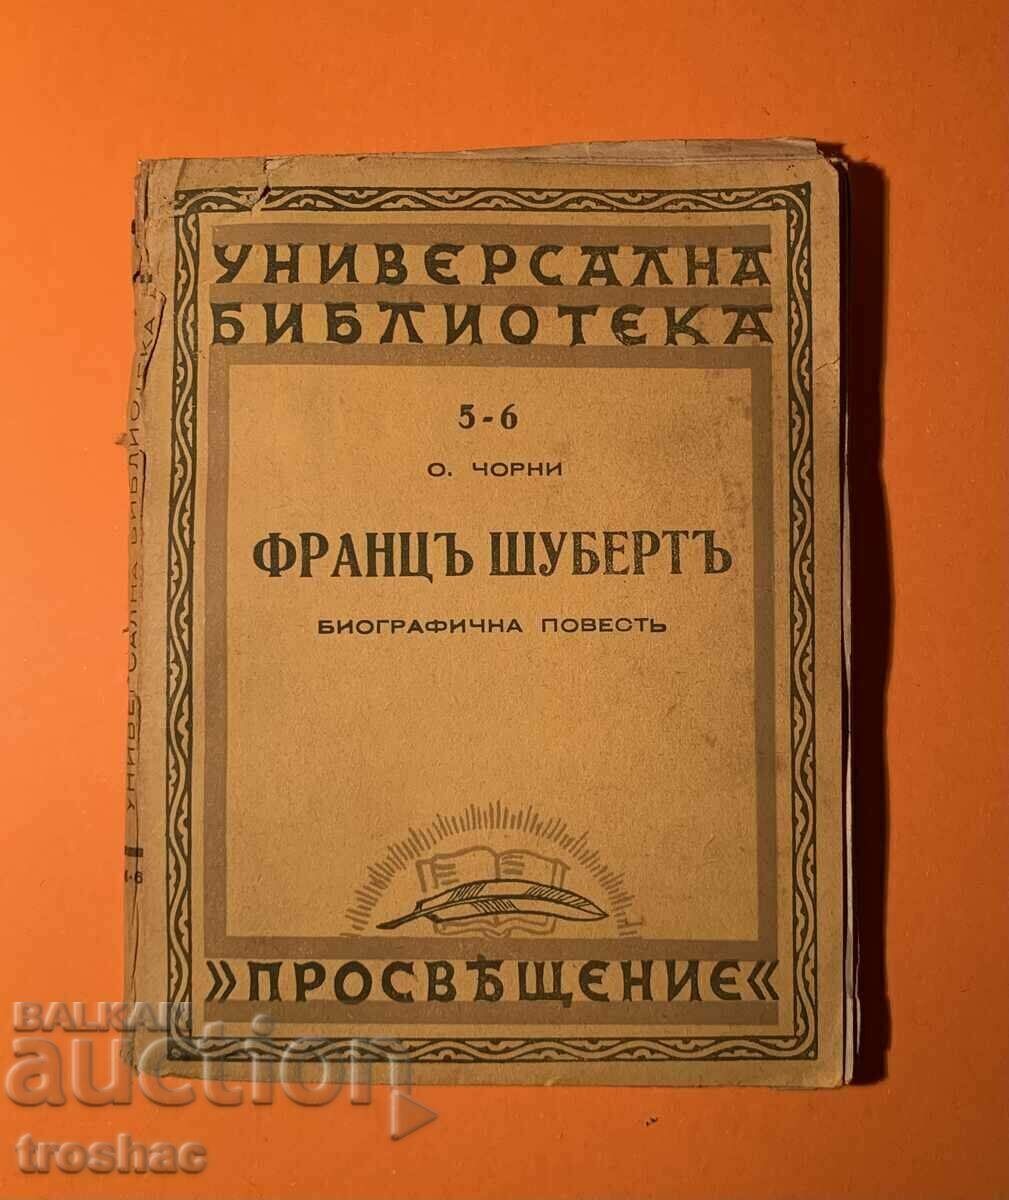 Old Book Franz Schubert Biographical Novel 1942